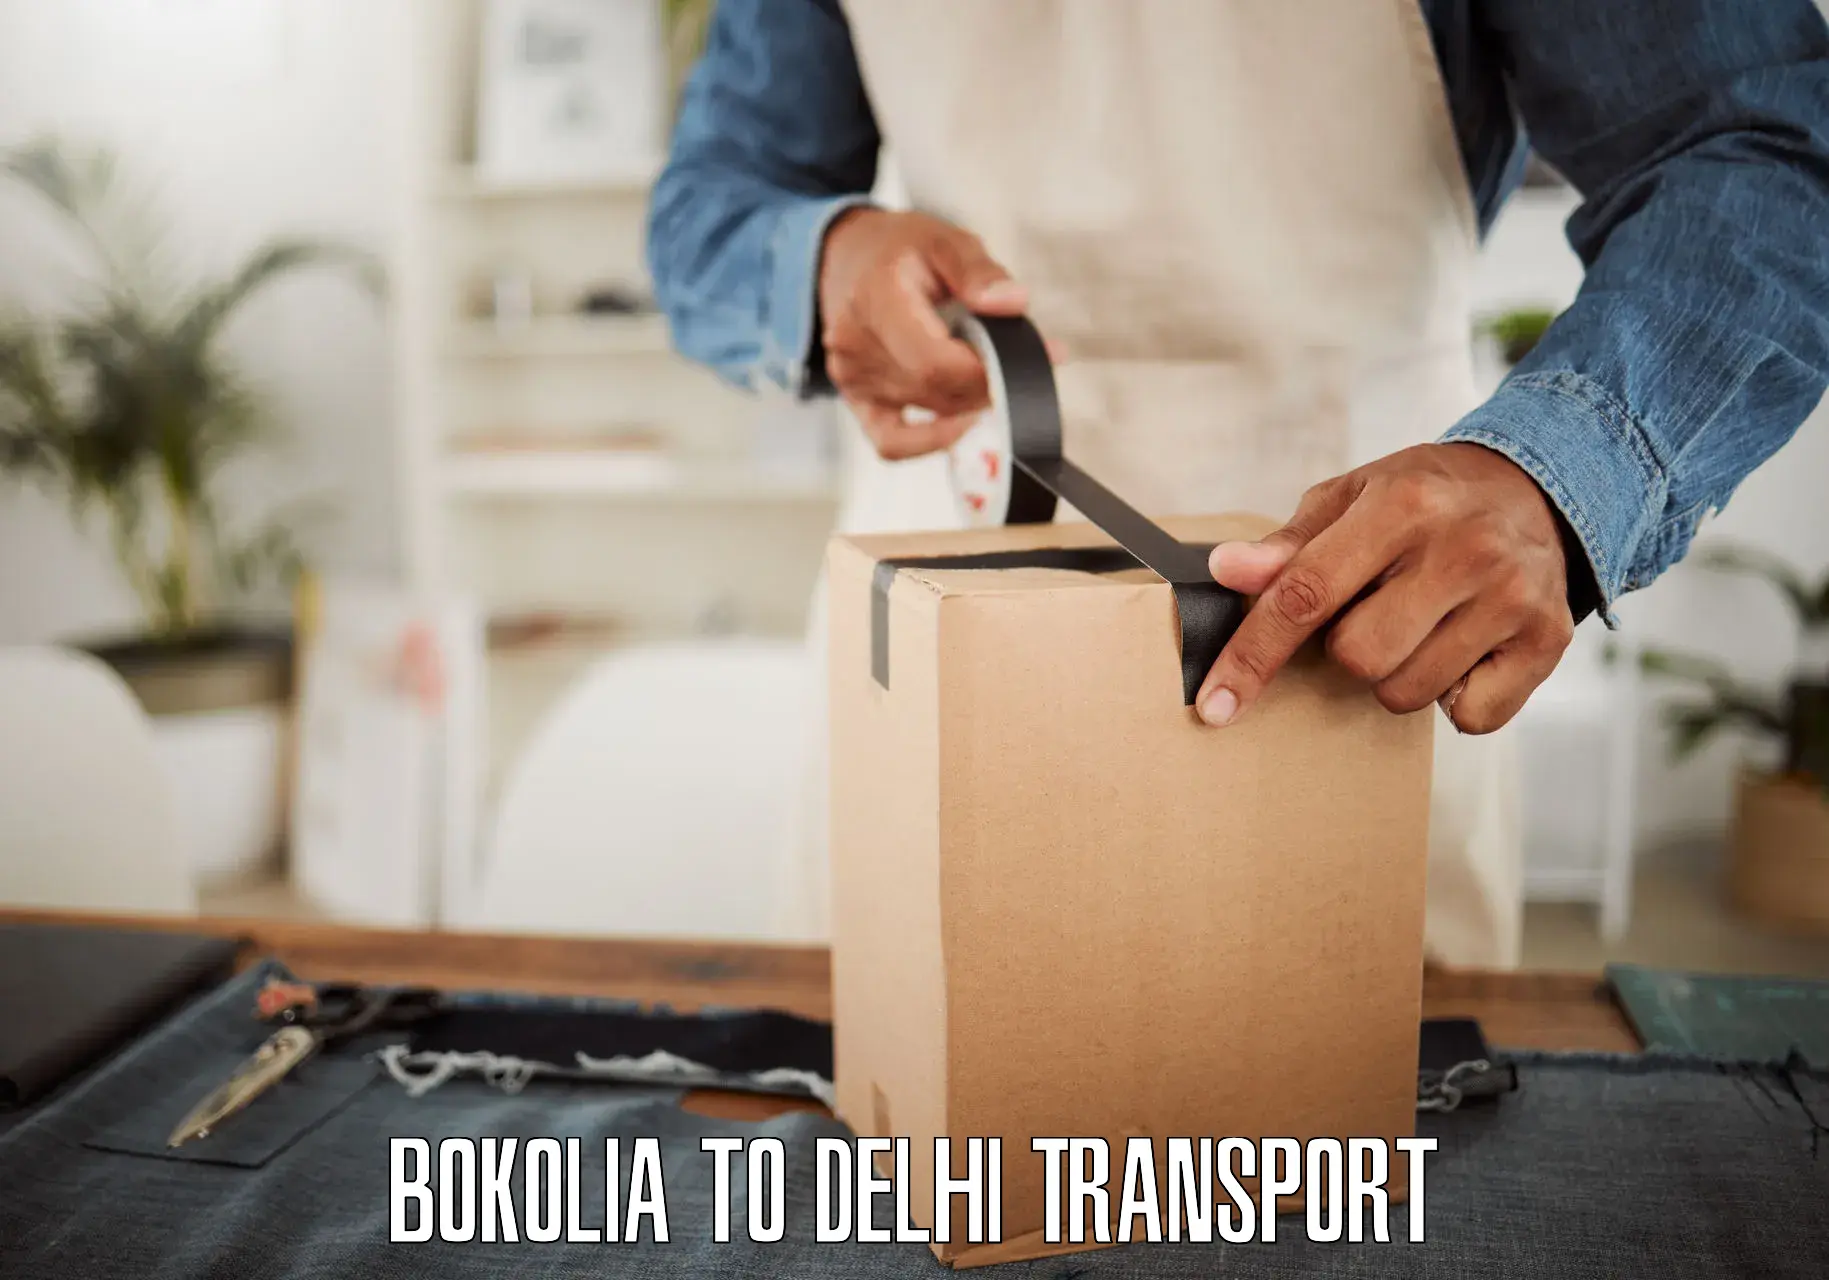 Transport in sharing Bokolia to Kalkaji